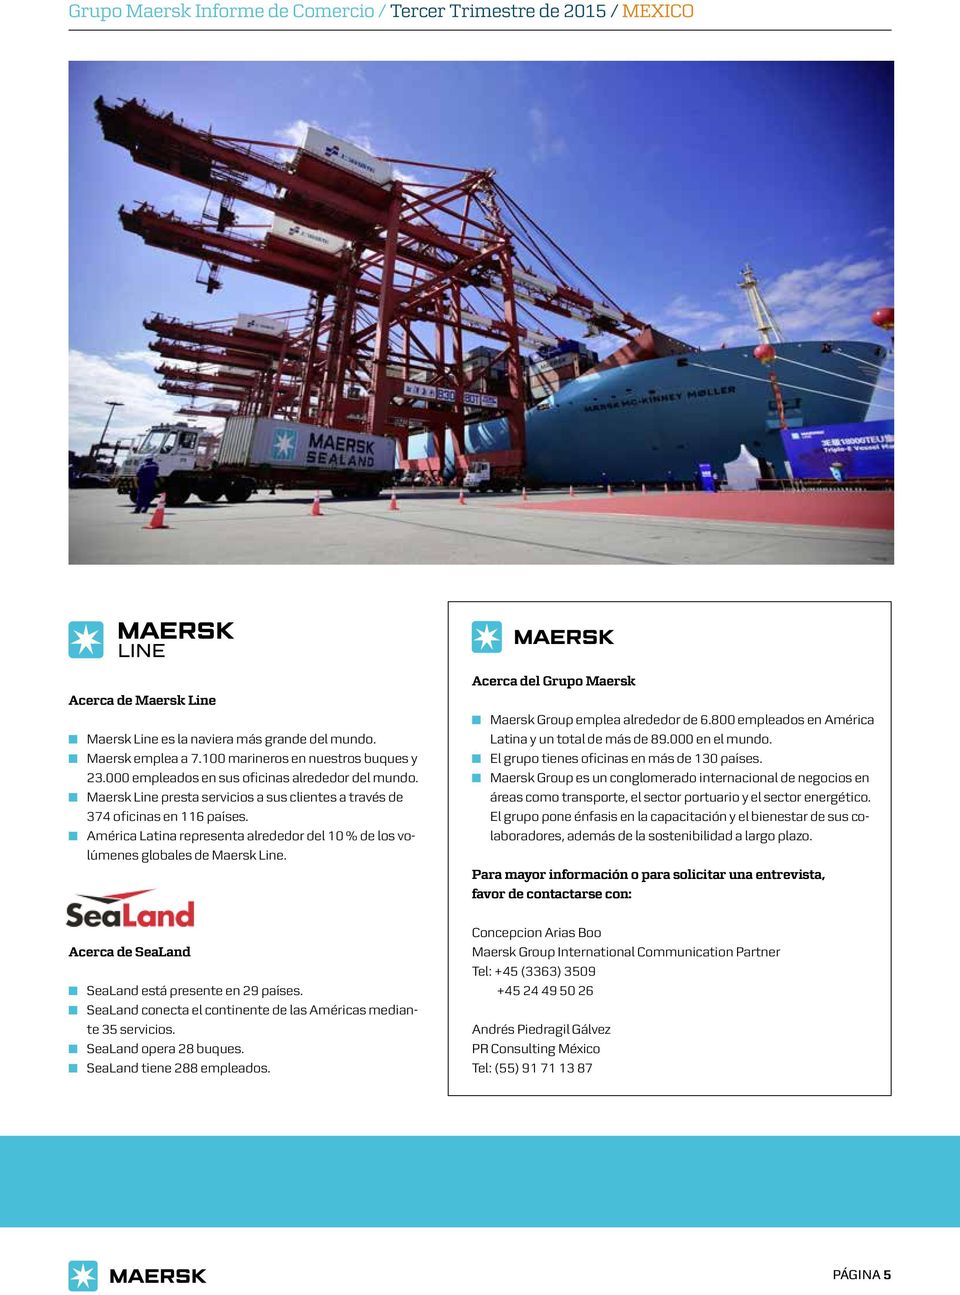 Acerca de SeaLand SeaLand está presente en 29 países. SeaLand conecta el continente de las Américas mediante 35 servicios. SeaLand opera 28 buques. SeaLand tiene 288 empleados.